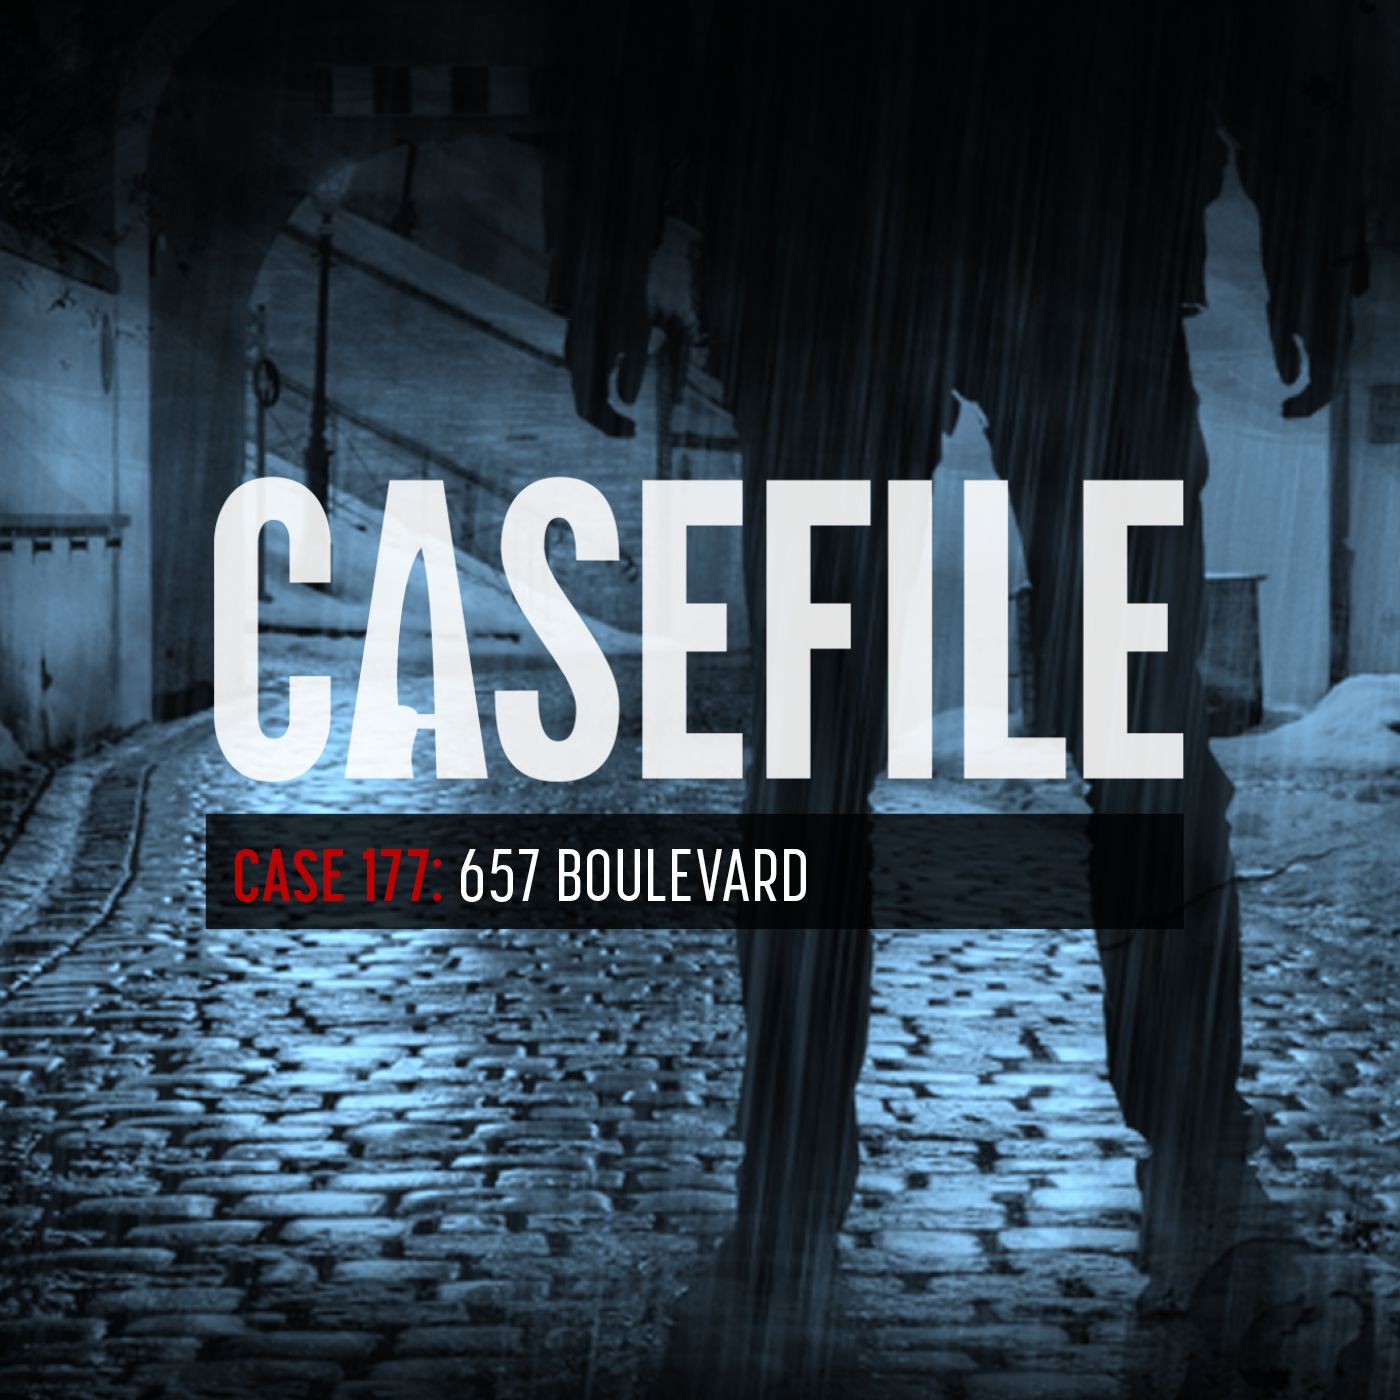 Case 177: 657 Boulevard